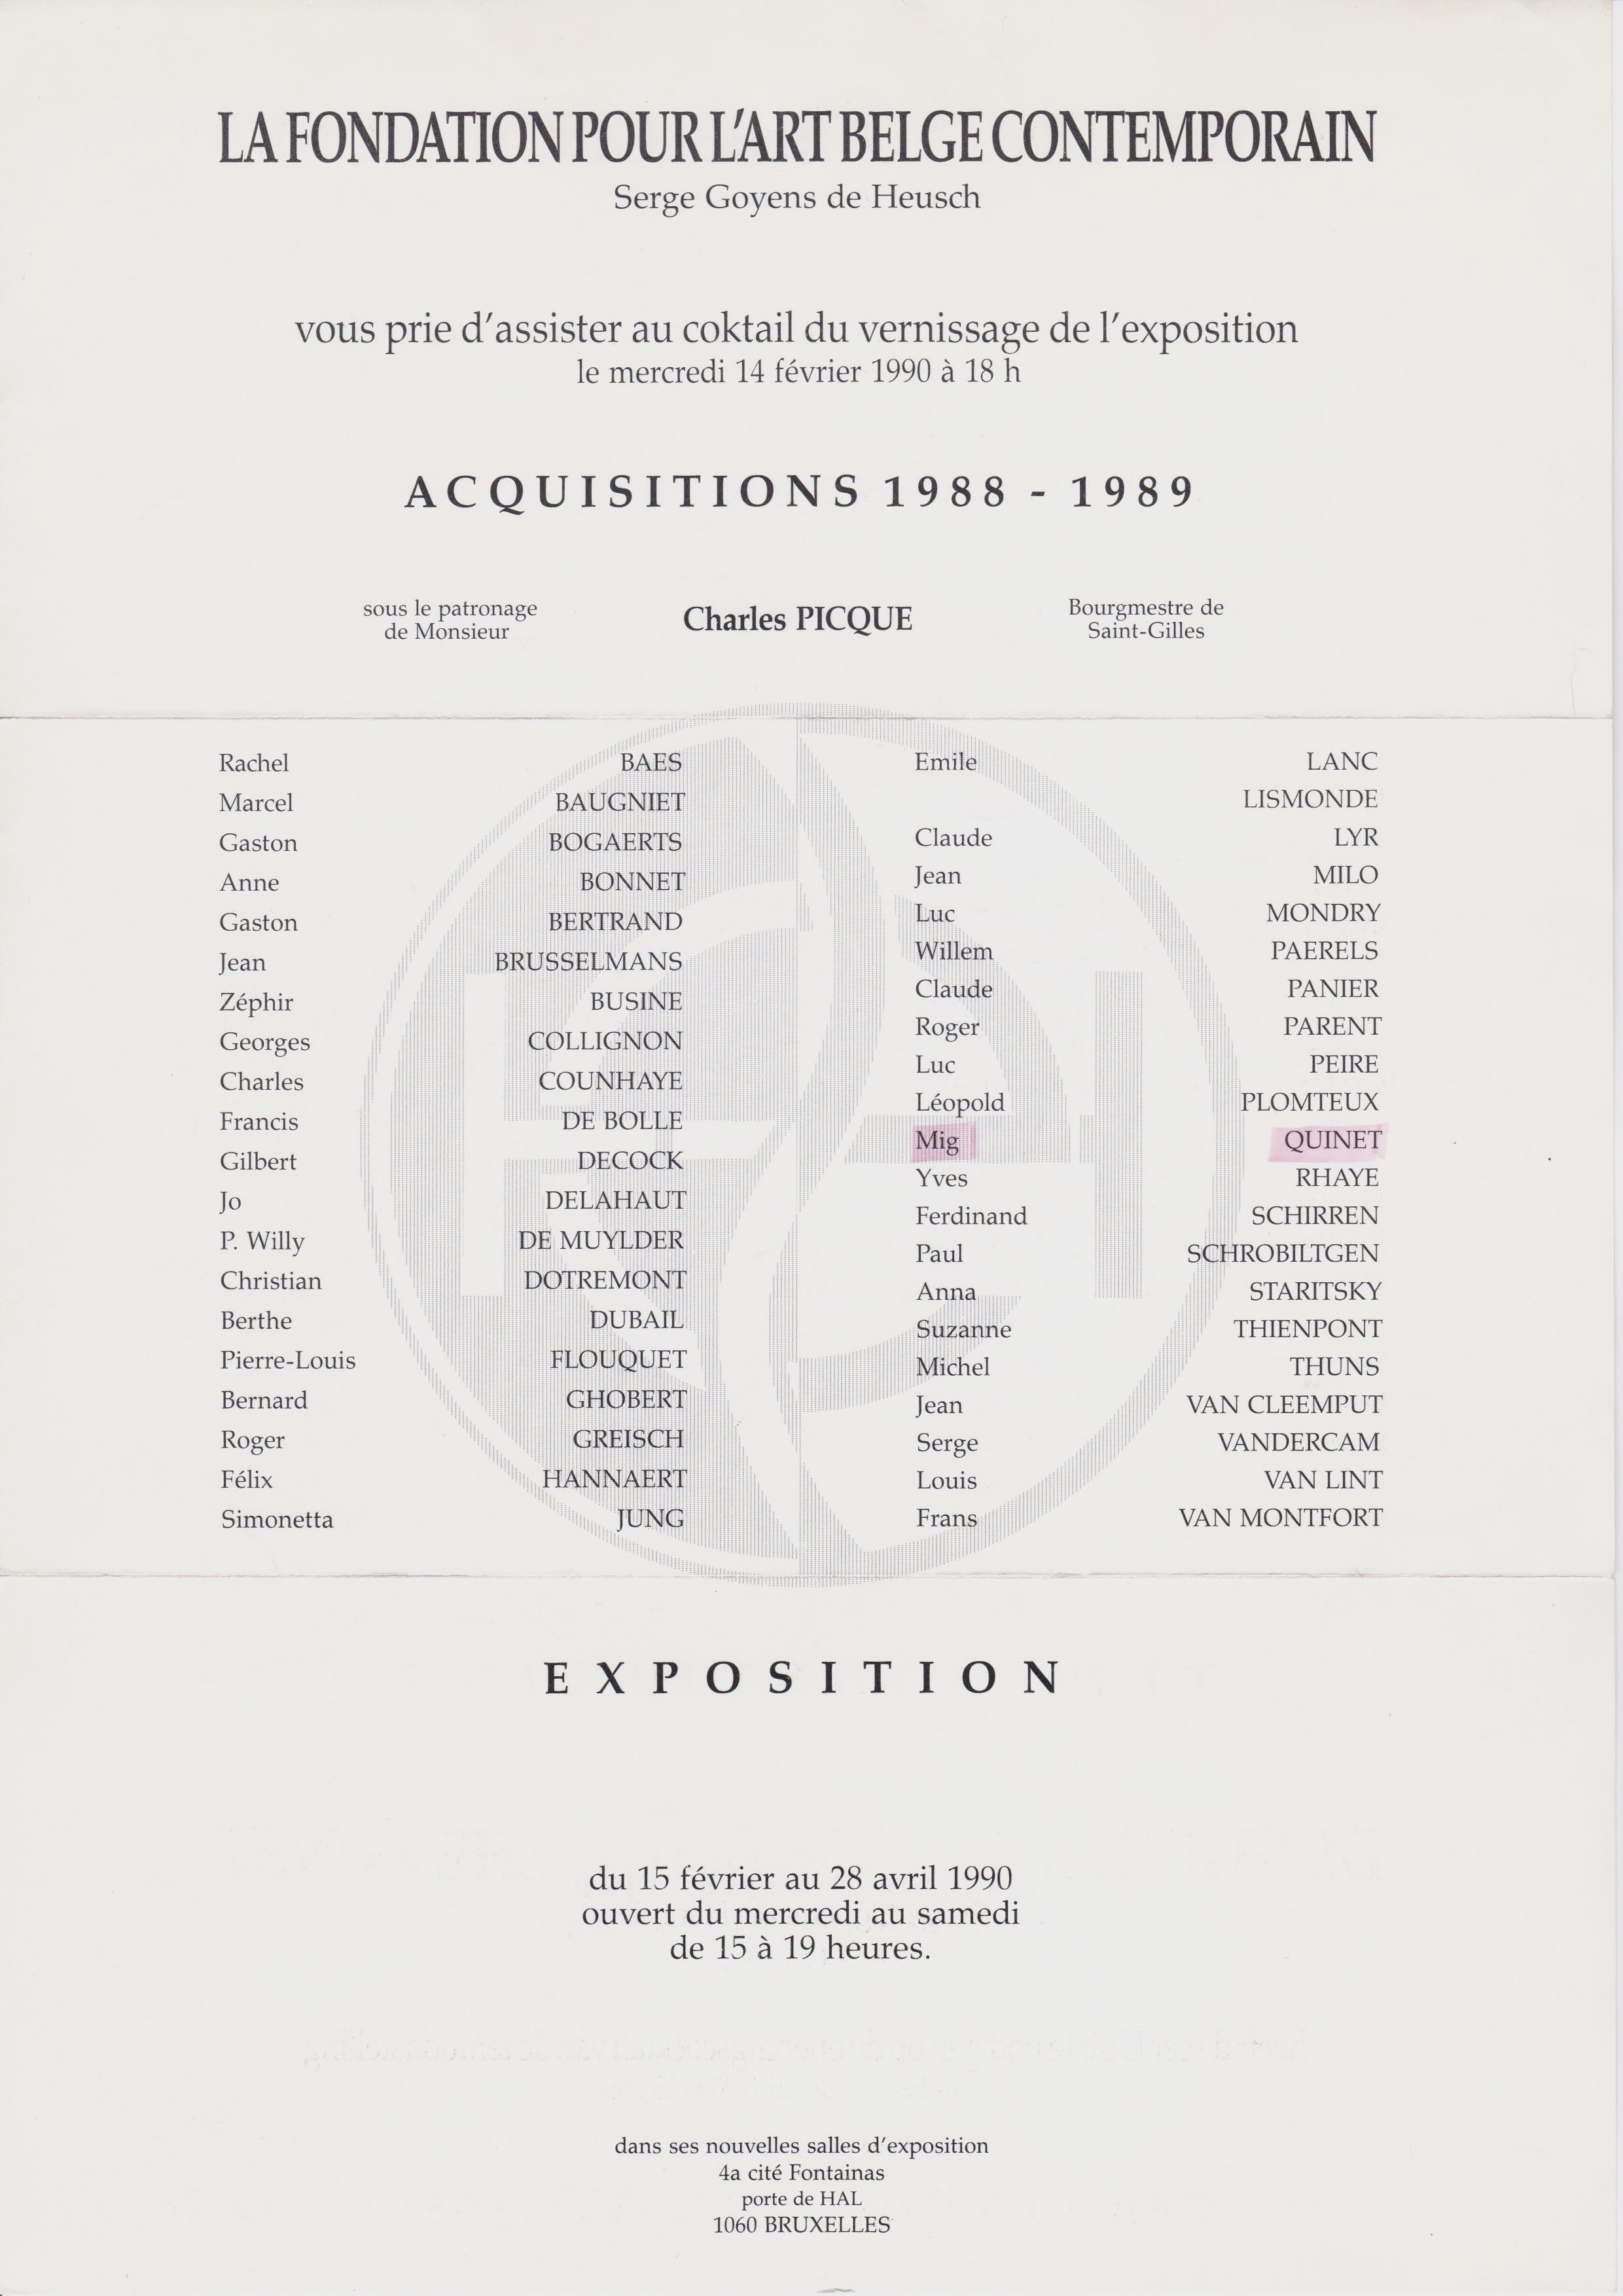 Acquisitions 1988-89, Fondation ABC, Bruxelles, 1990